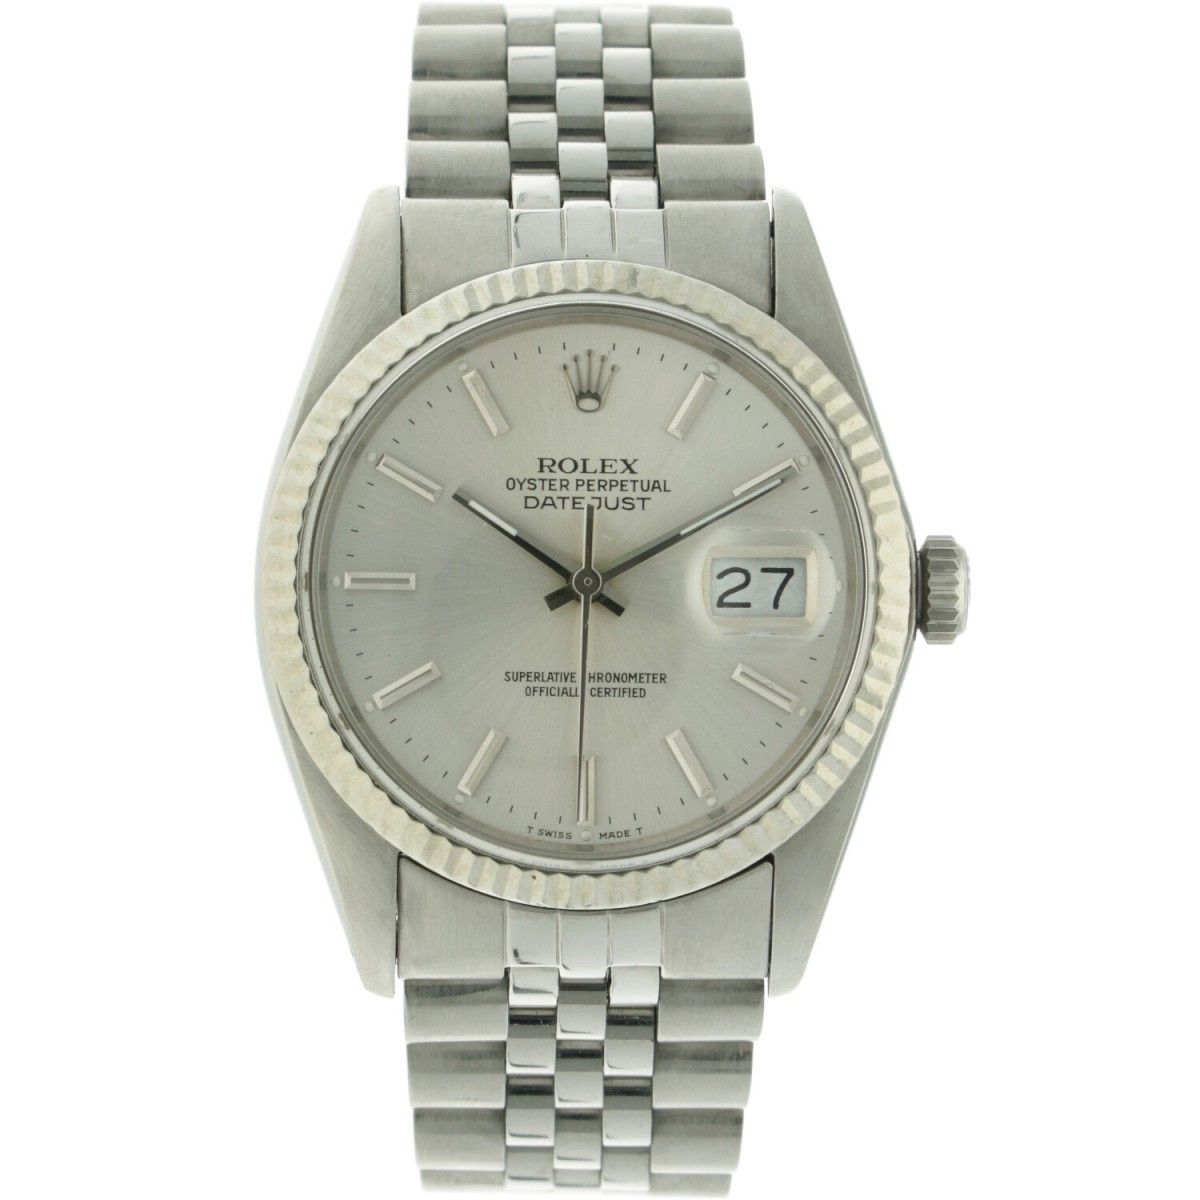 Rolex Datejust 16014 - Men's watch - apprx. 1988. Gehäuse: Stahl - Armband: Stah&hellip;